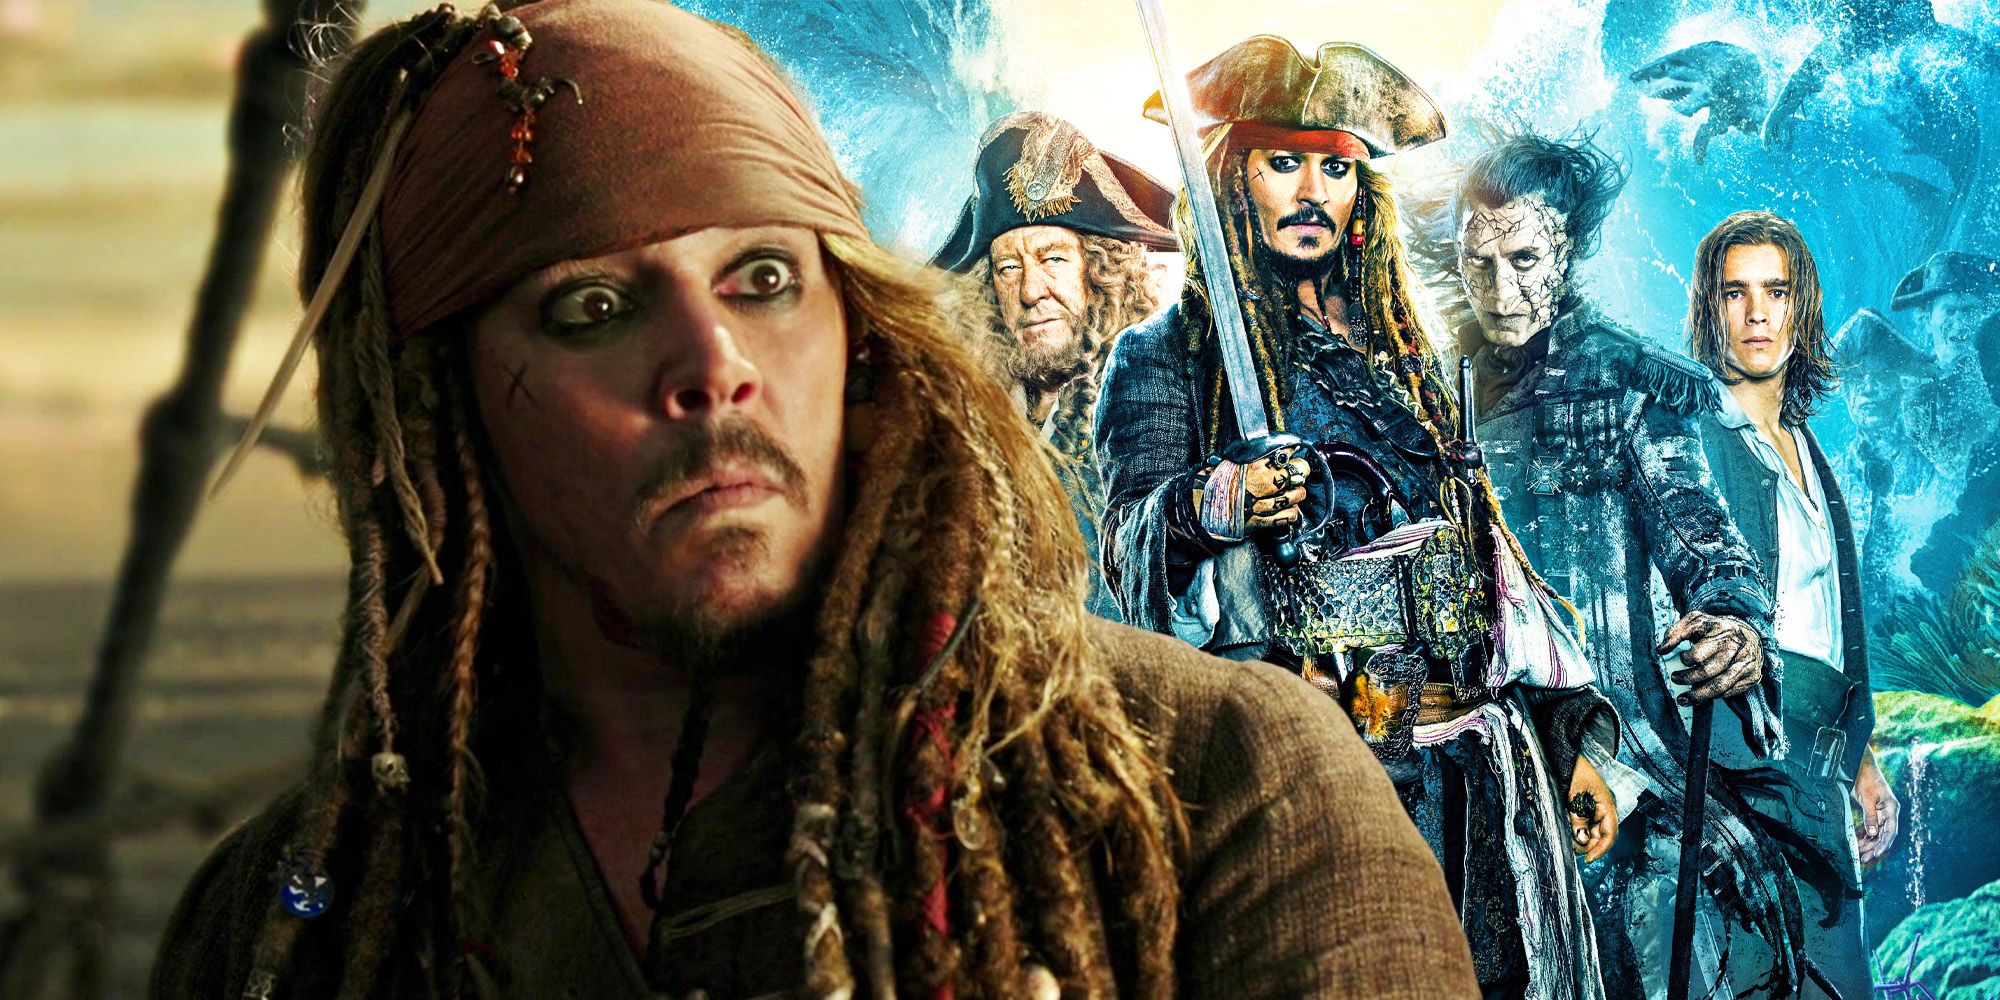 Jack Sparrow sieht überrascht vor einer Collage aus Dead Men Tell No Tales-Figuren aus